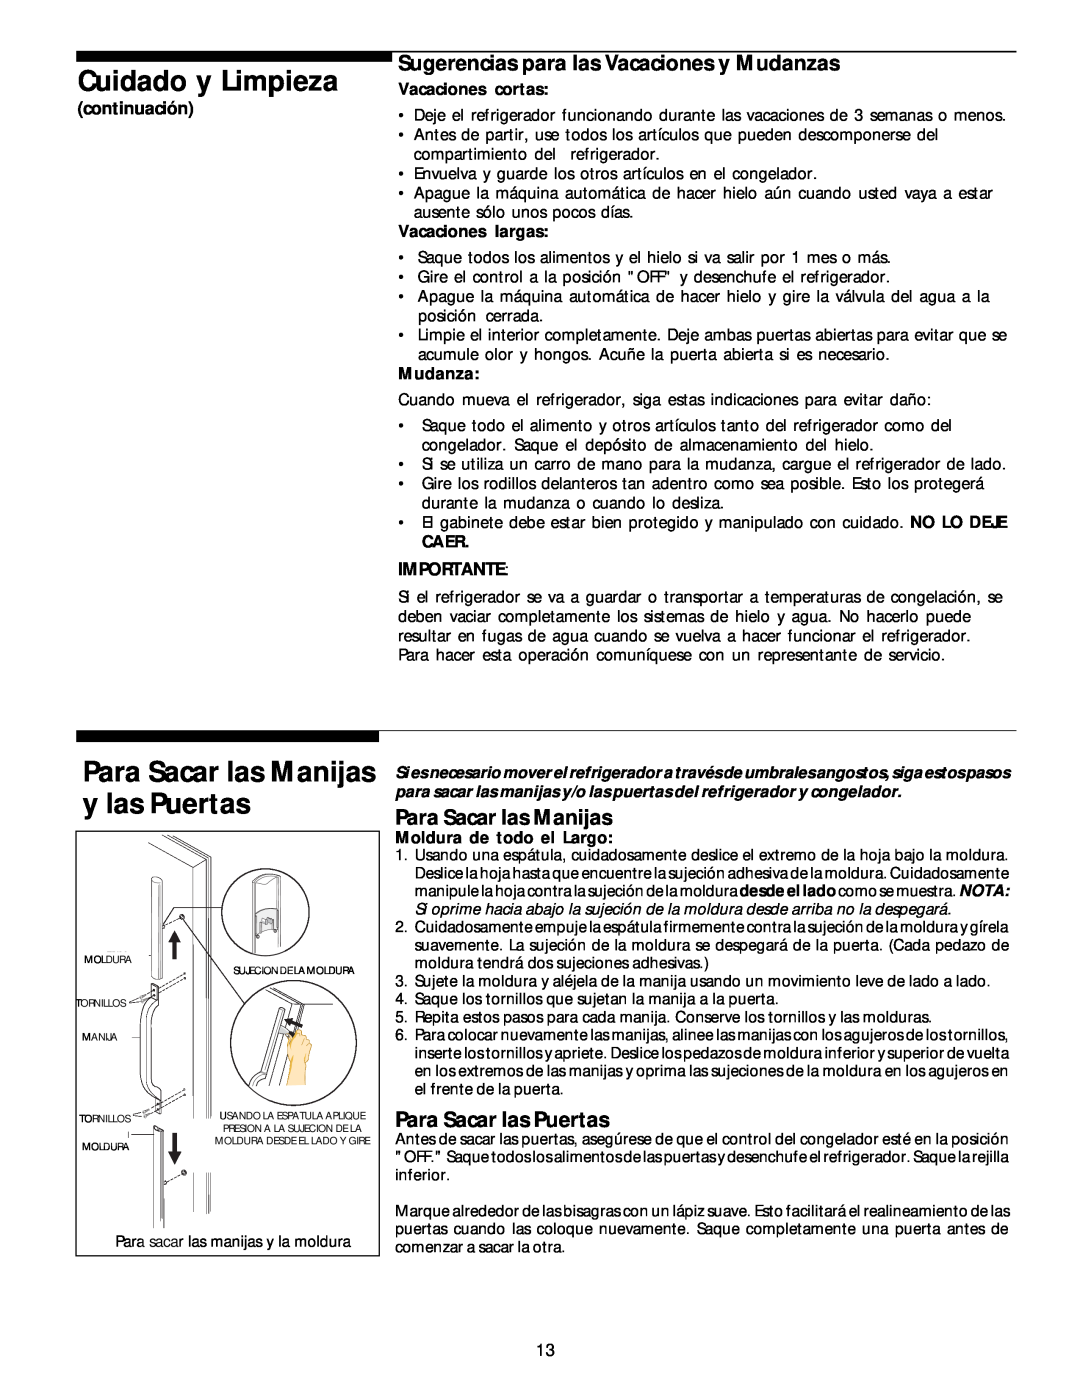 White-Westinghouse 218954301 manual Para Sacar las Manijas y las Puertas, Sugerencias para las Vacaciones y Mudanzas 